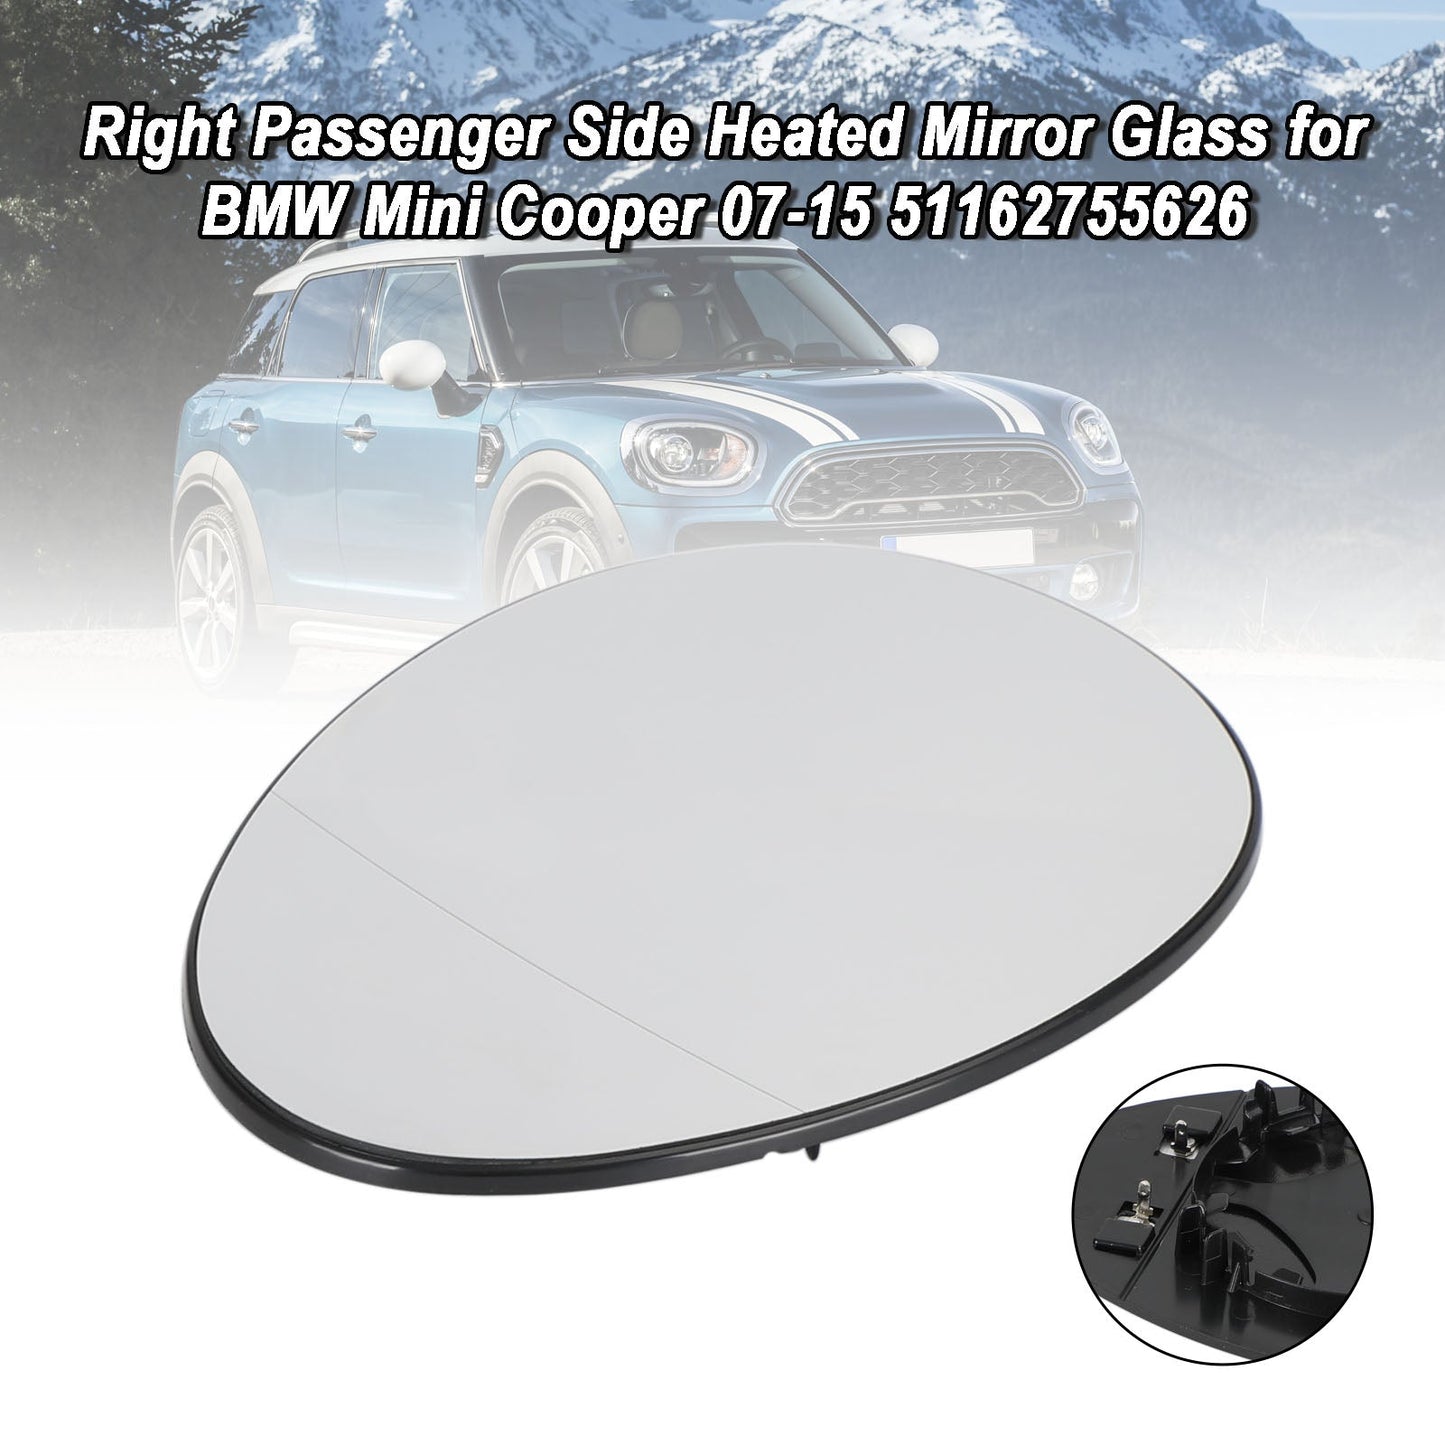 BMW Mini Cooper 2007–2015 51162755626 rechte Beifahrerseite beheizbares Spiegelglas